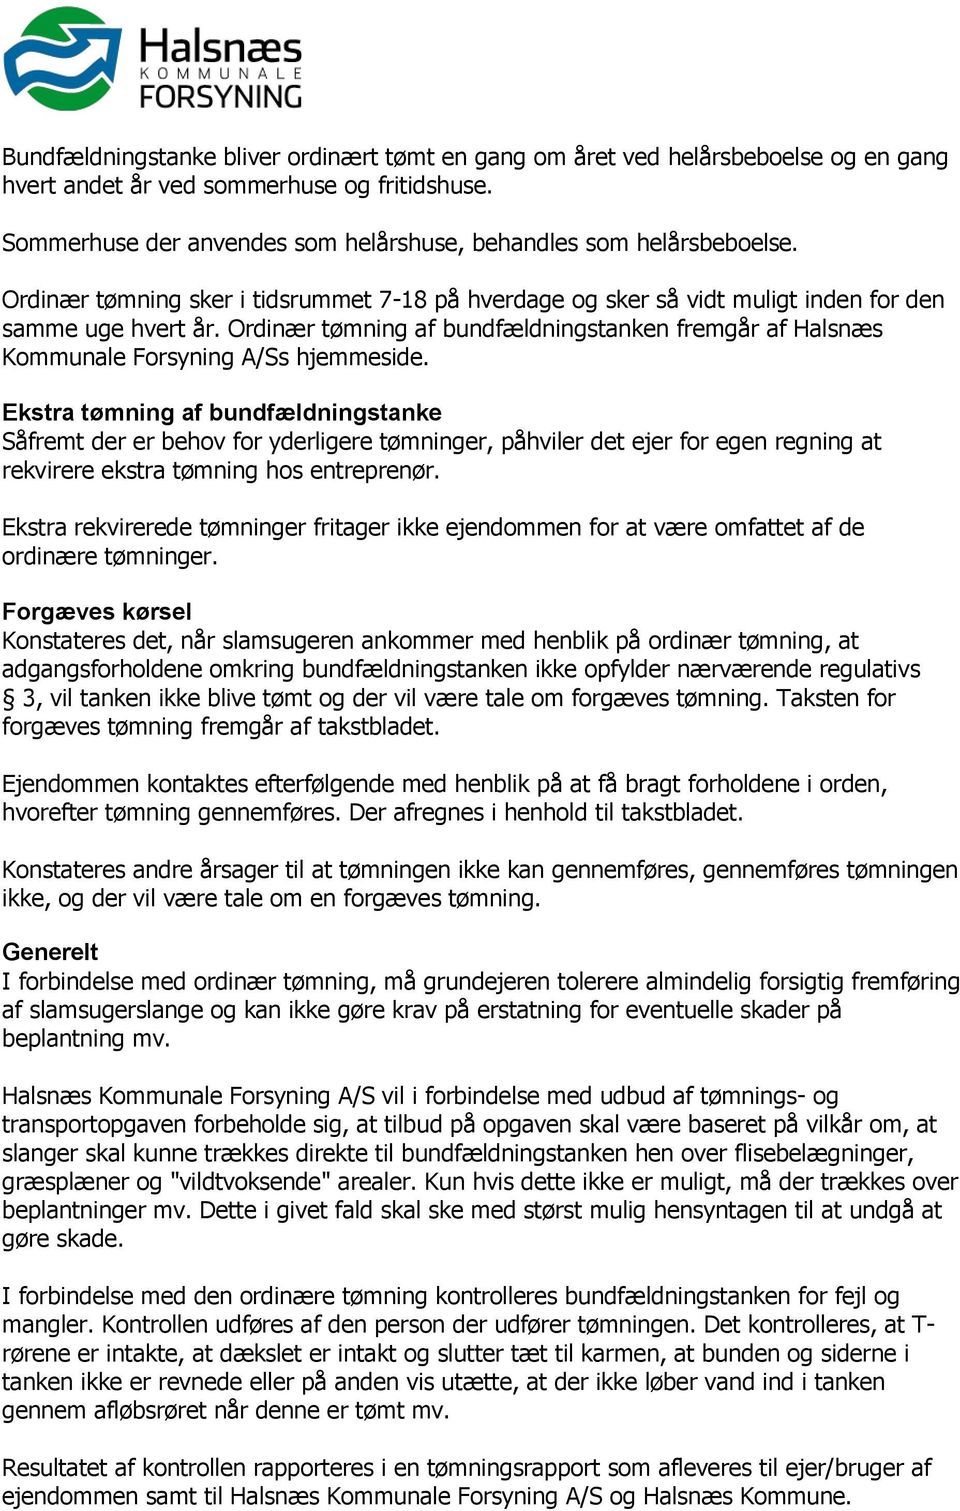 Ordinær tømning af bundfældningstanken fremgår af Halsnæs Kommunale Forsyning A/Ss hjemmeside.